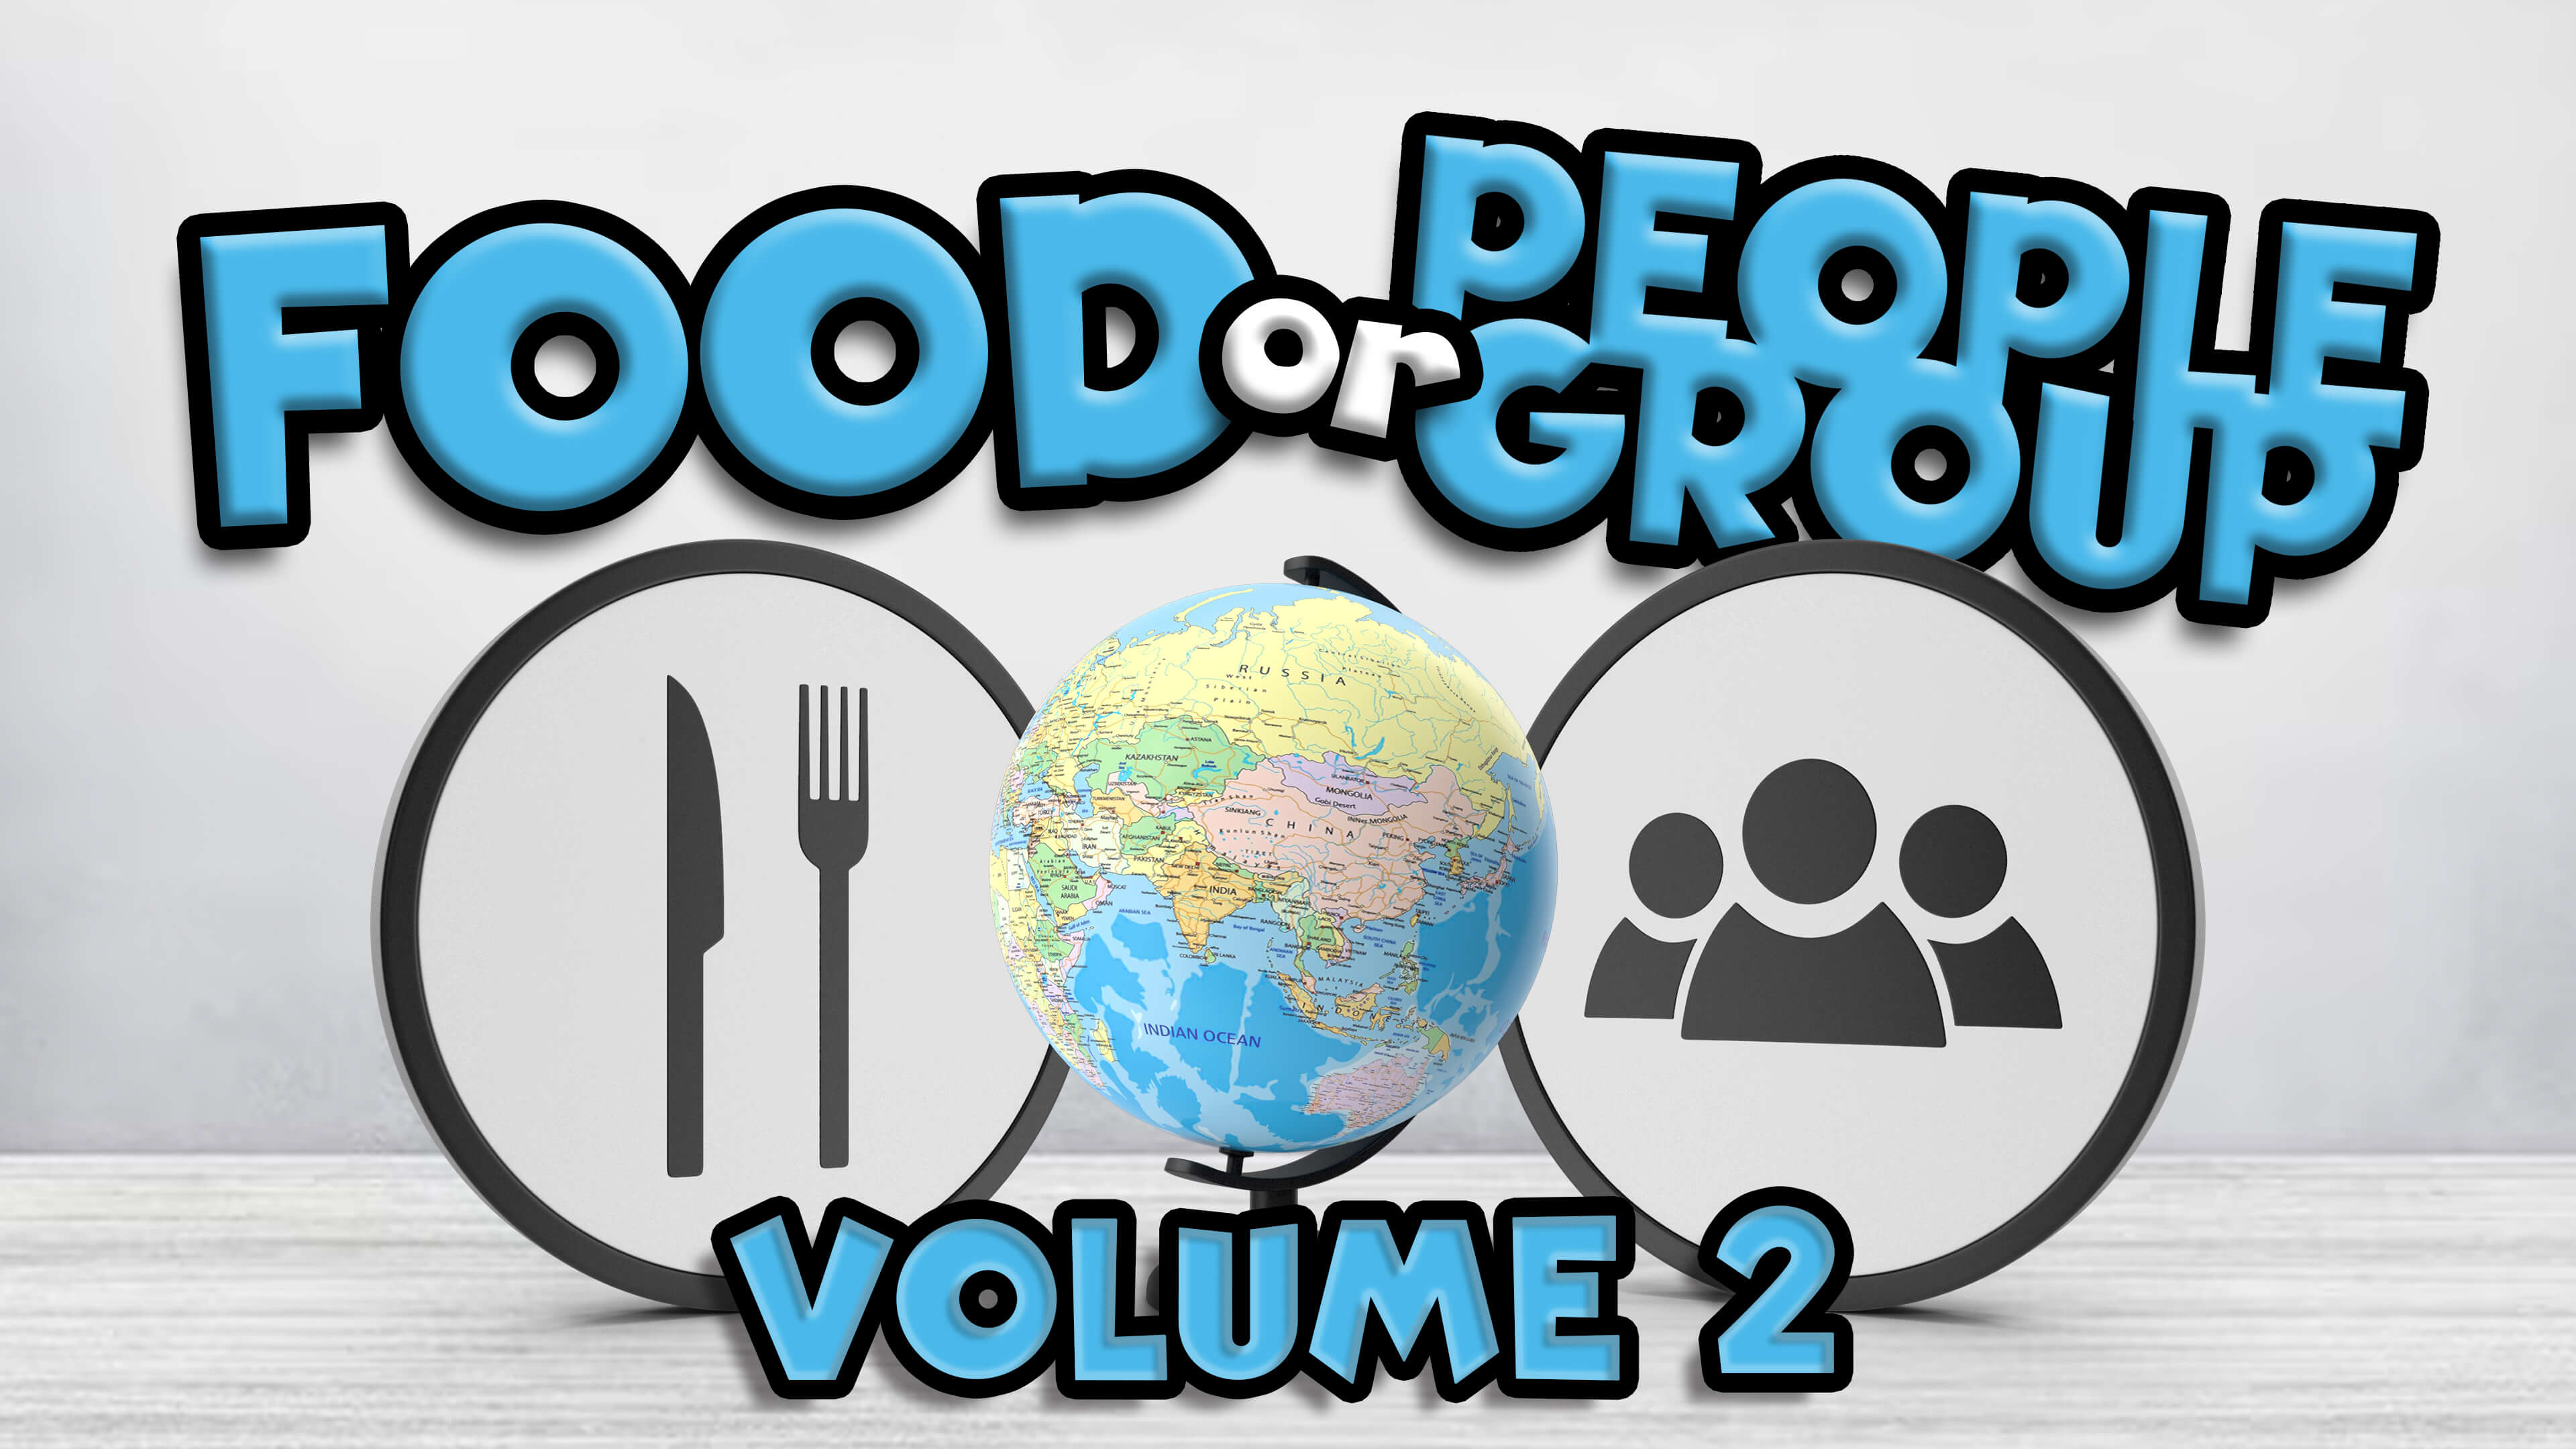 Food or People Group Volume 2